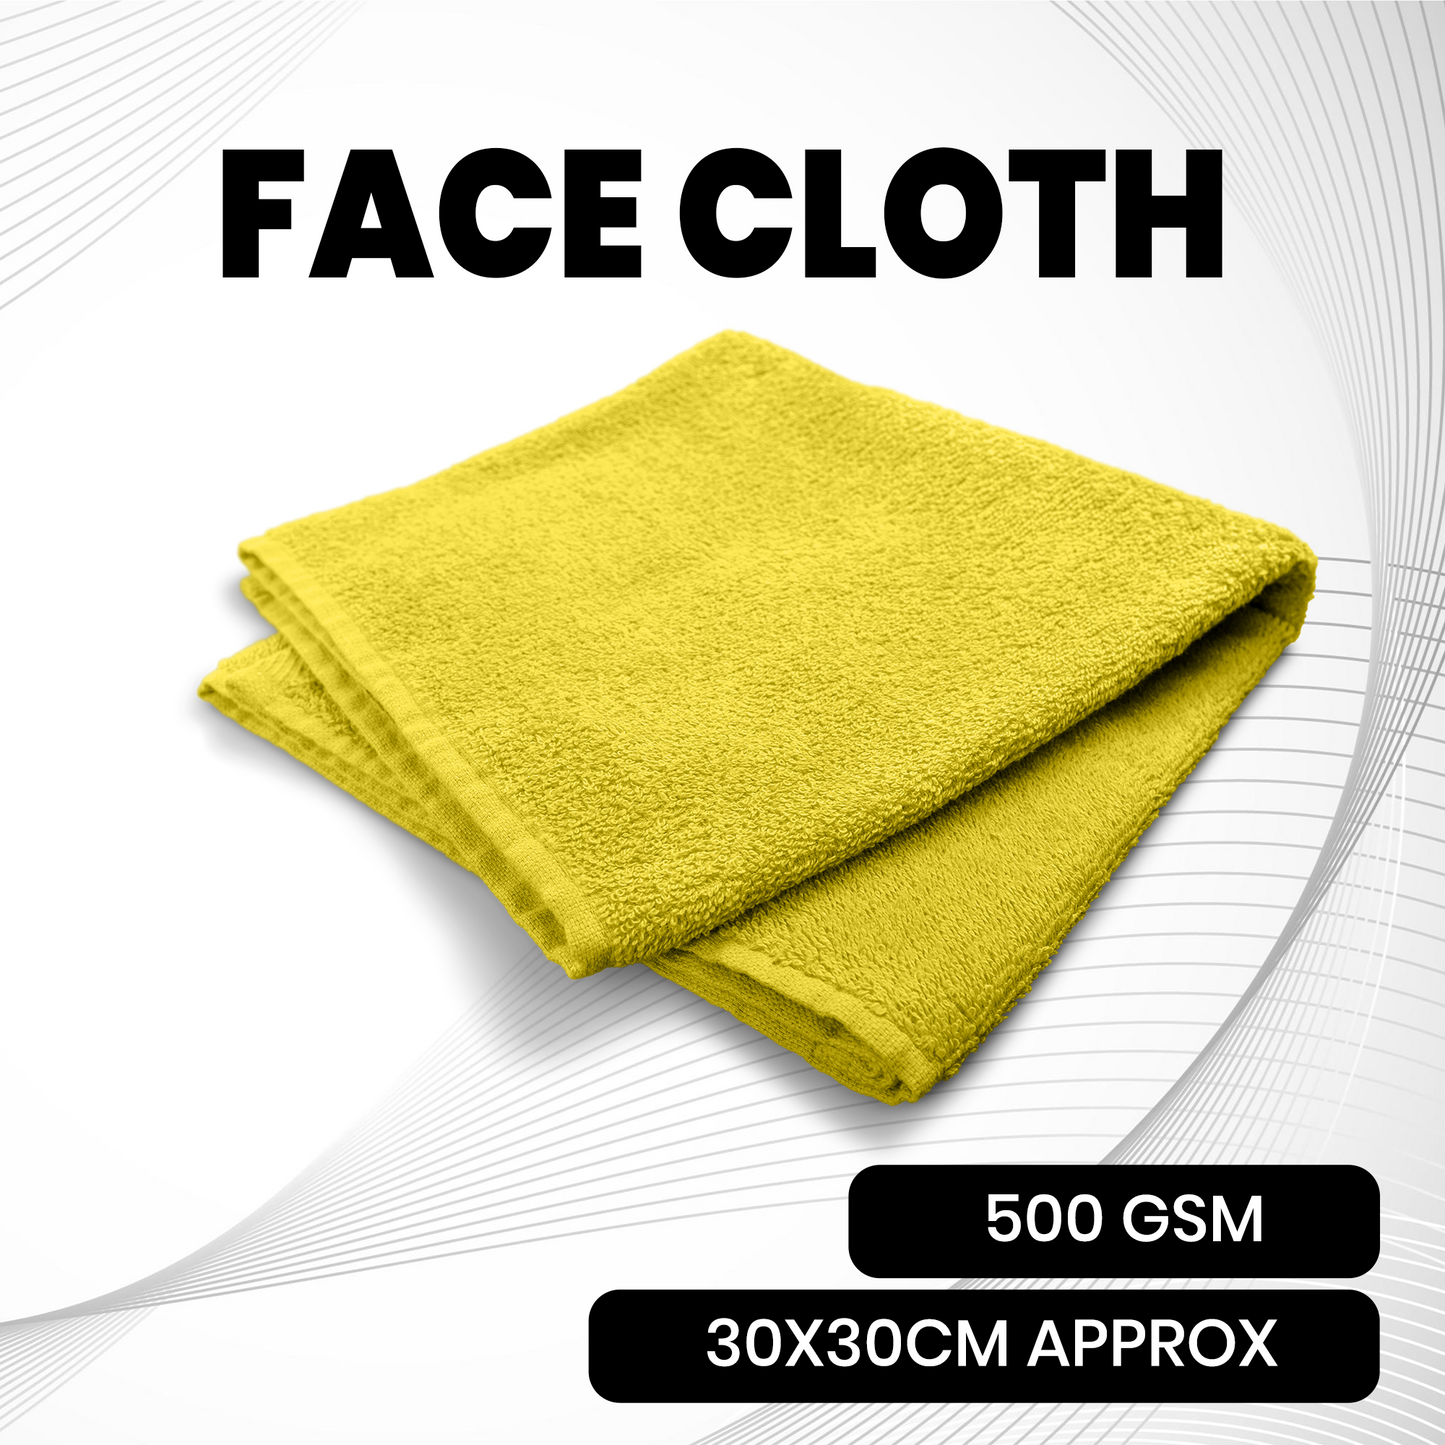 Luxury Face Towels pack Super Soft 100% Pure Cotton Face Cloths Flannels Wash Cloths UK ⭐⭐⭐⭐⭐